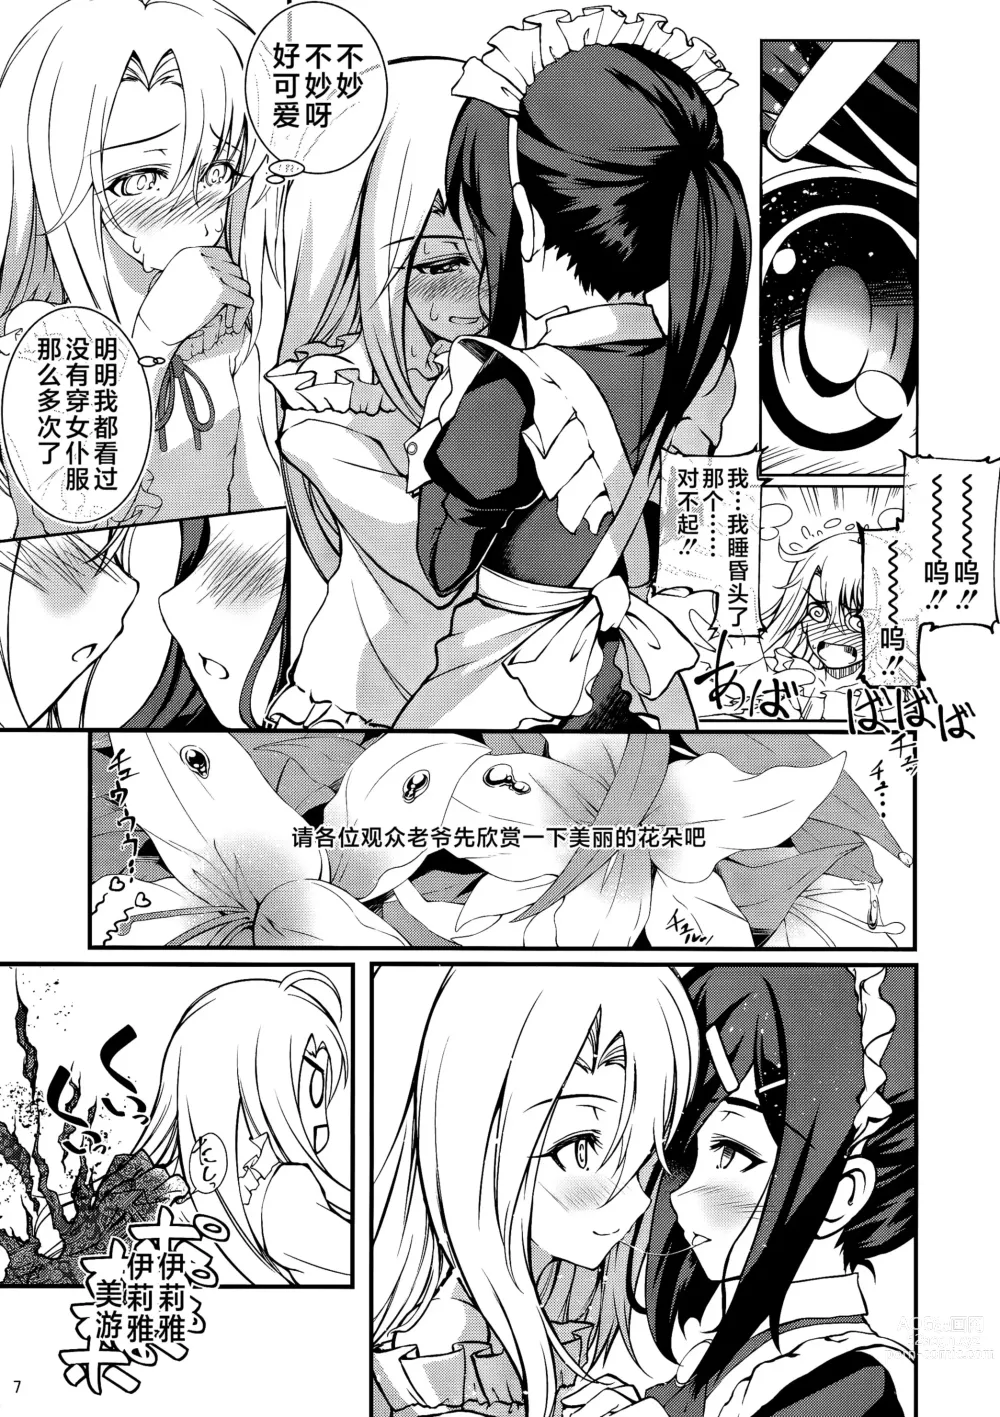 Page 6 of doujinshi SHH:01